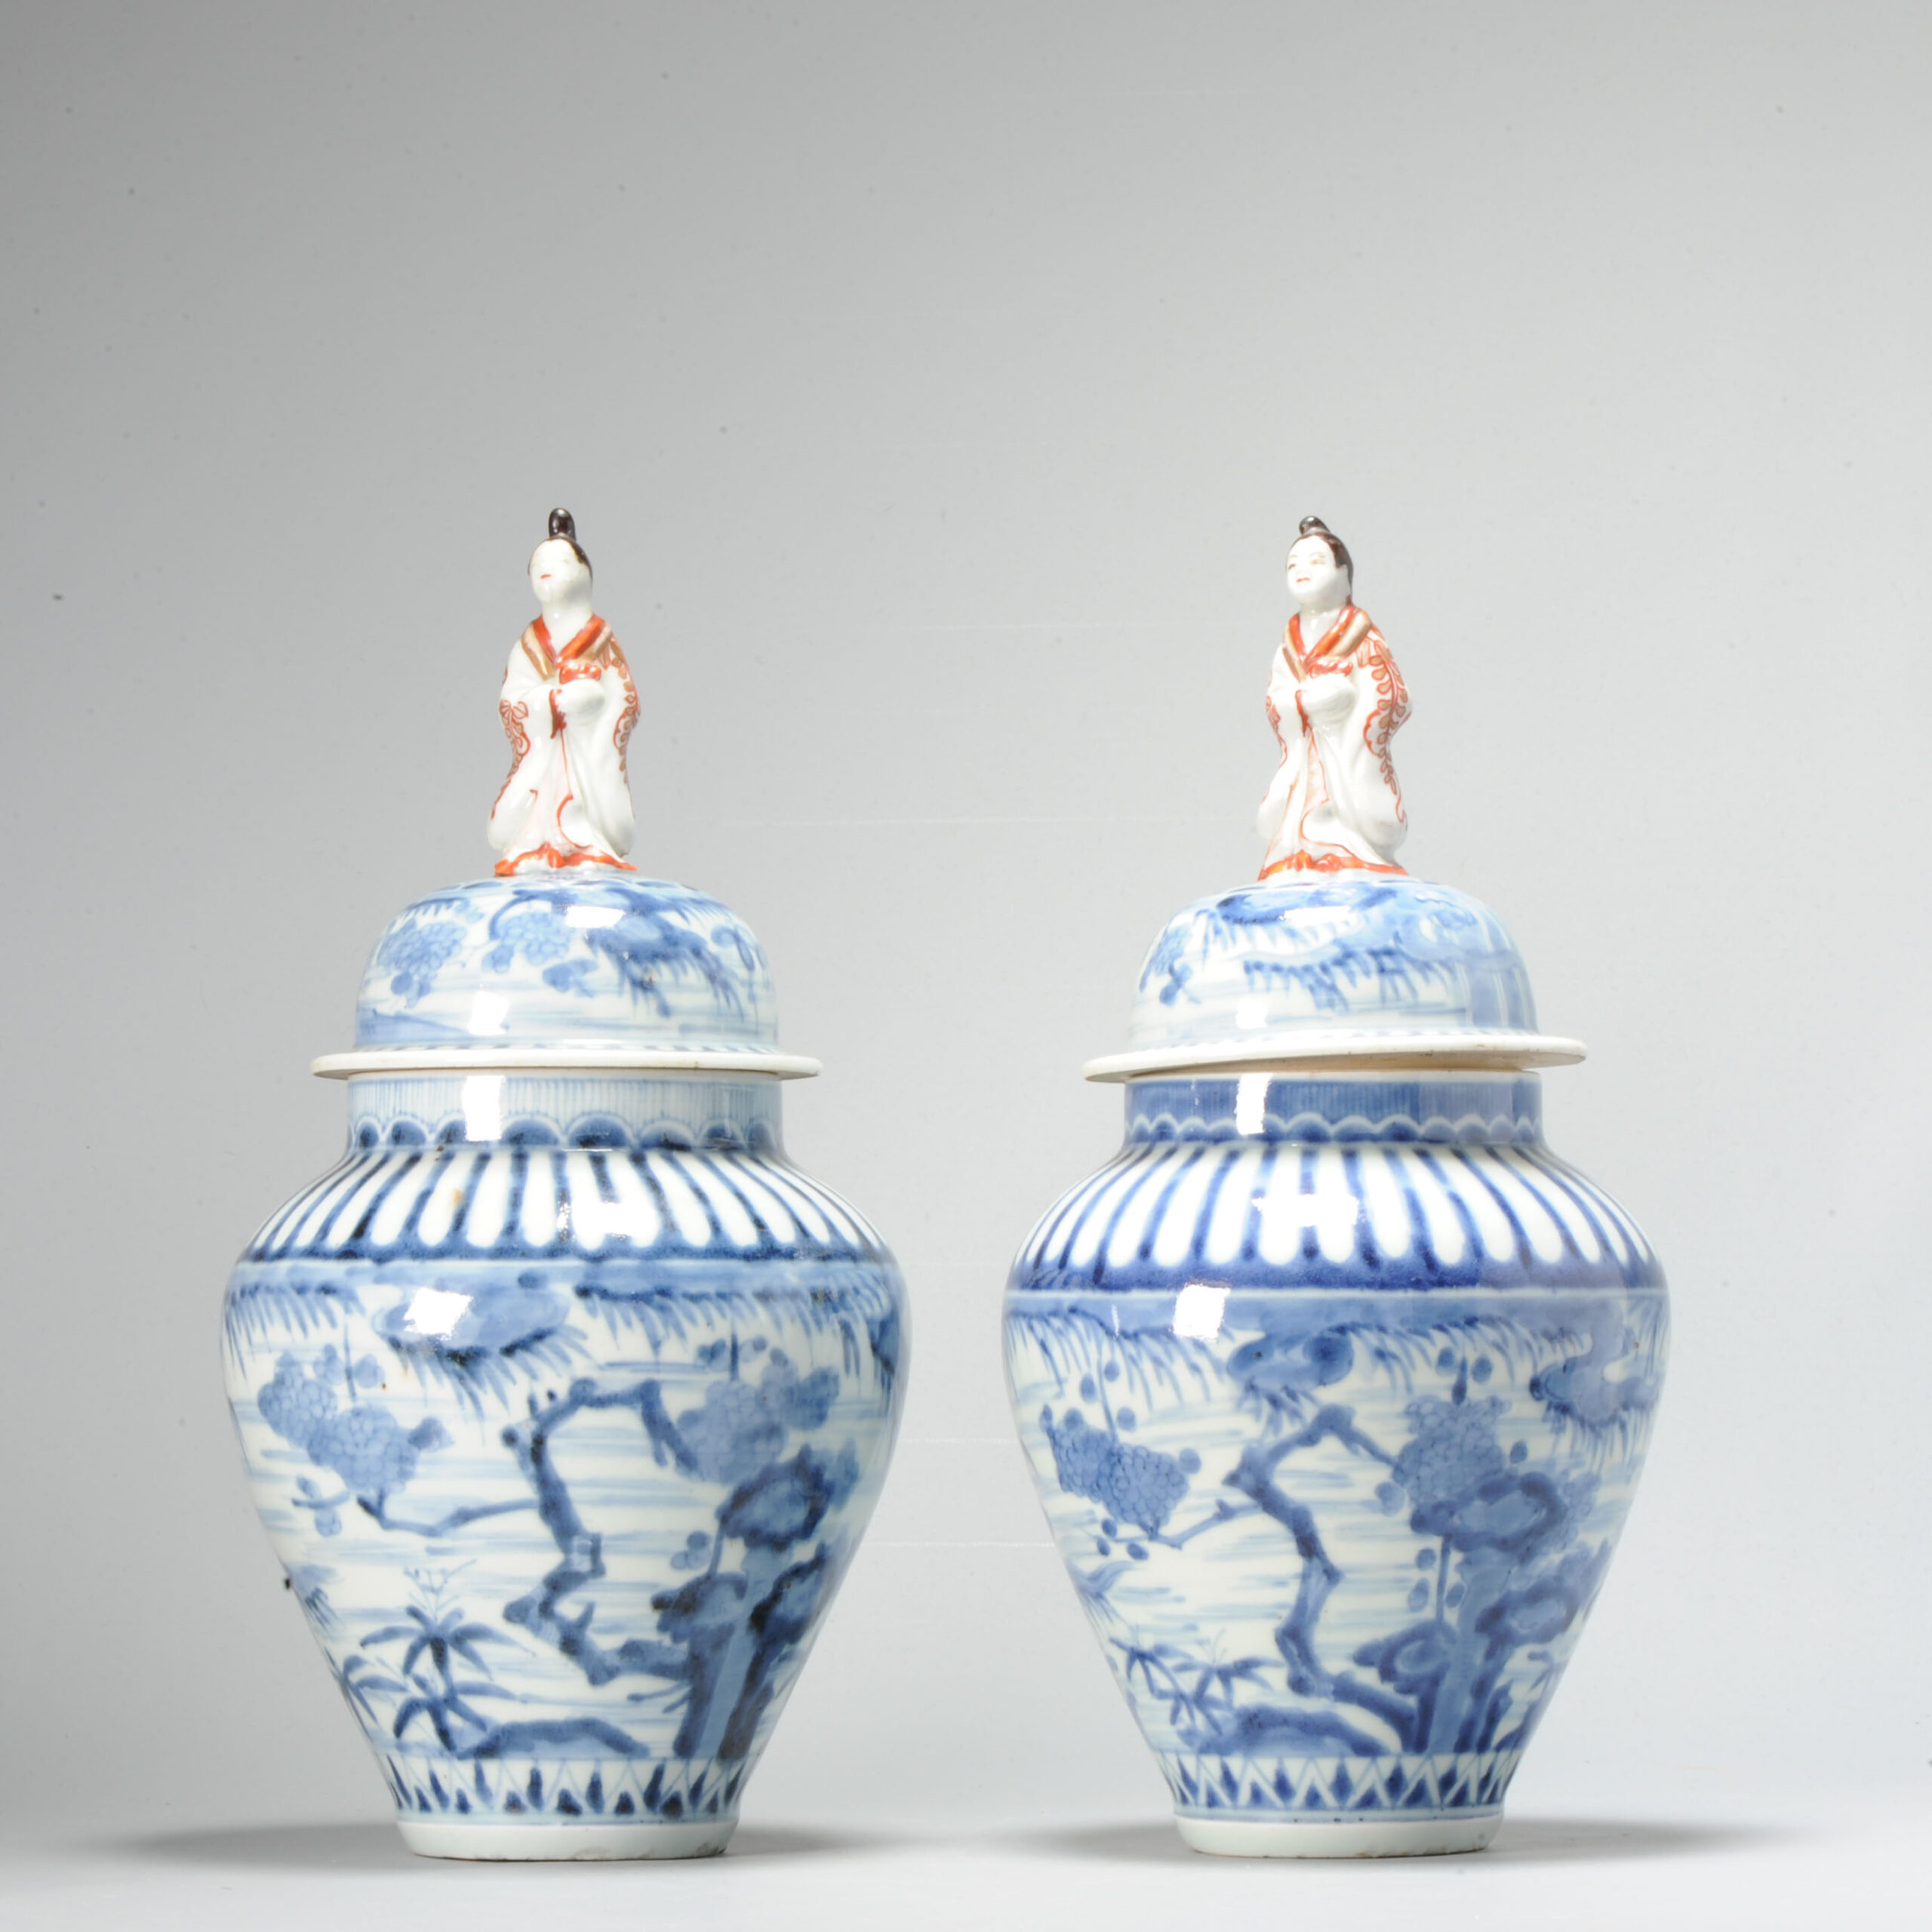 Antique Edo Period 17/18C Japanese Arita Vases with Figure Finials and landscape